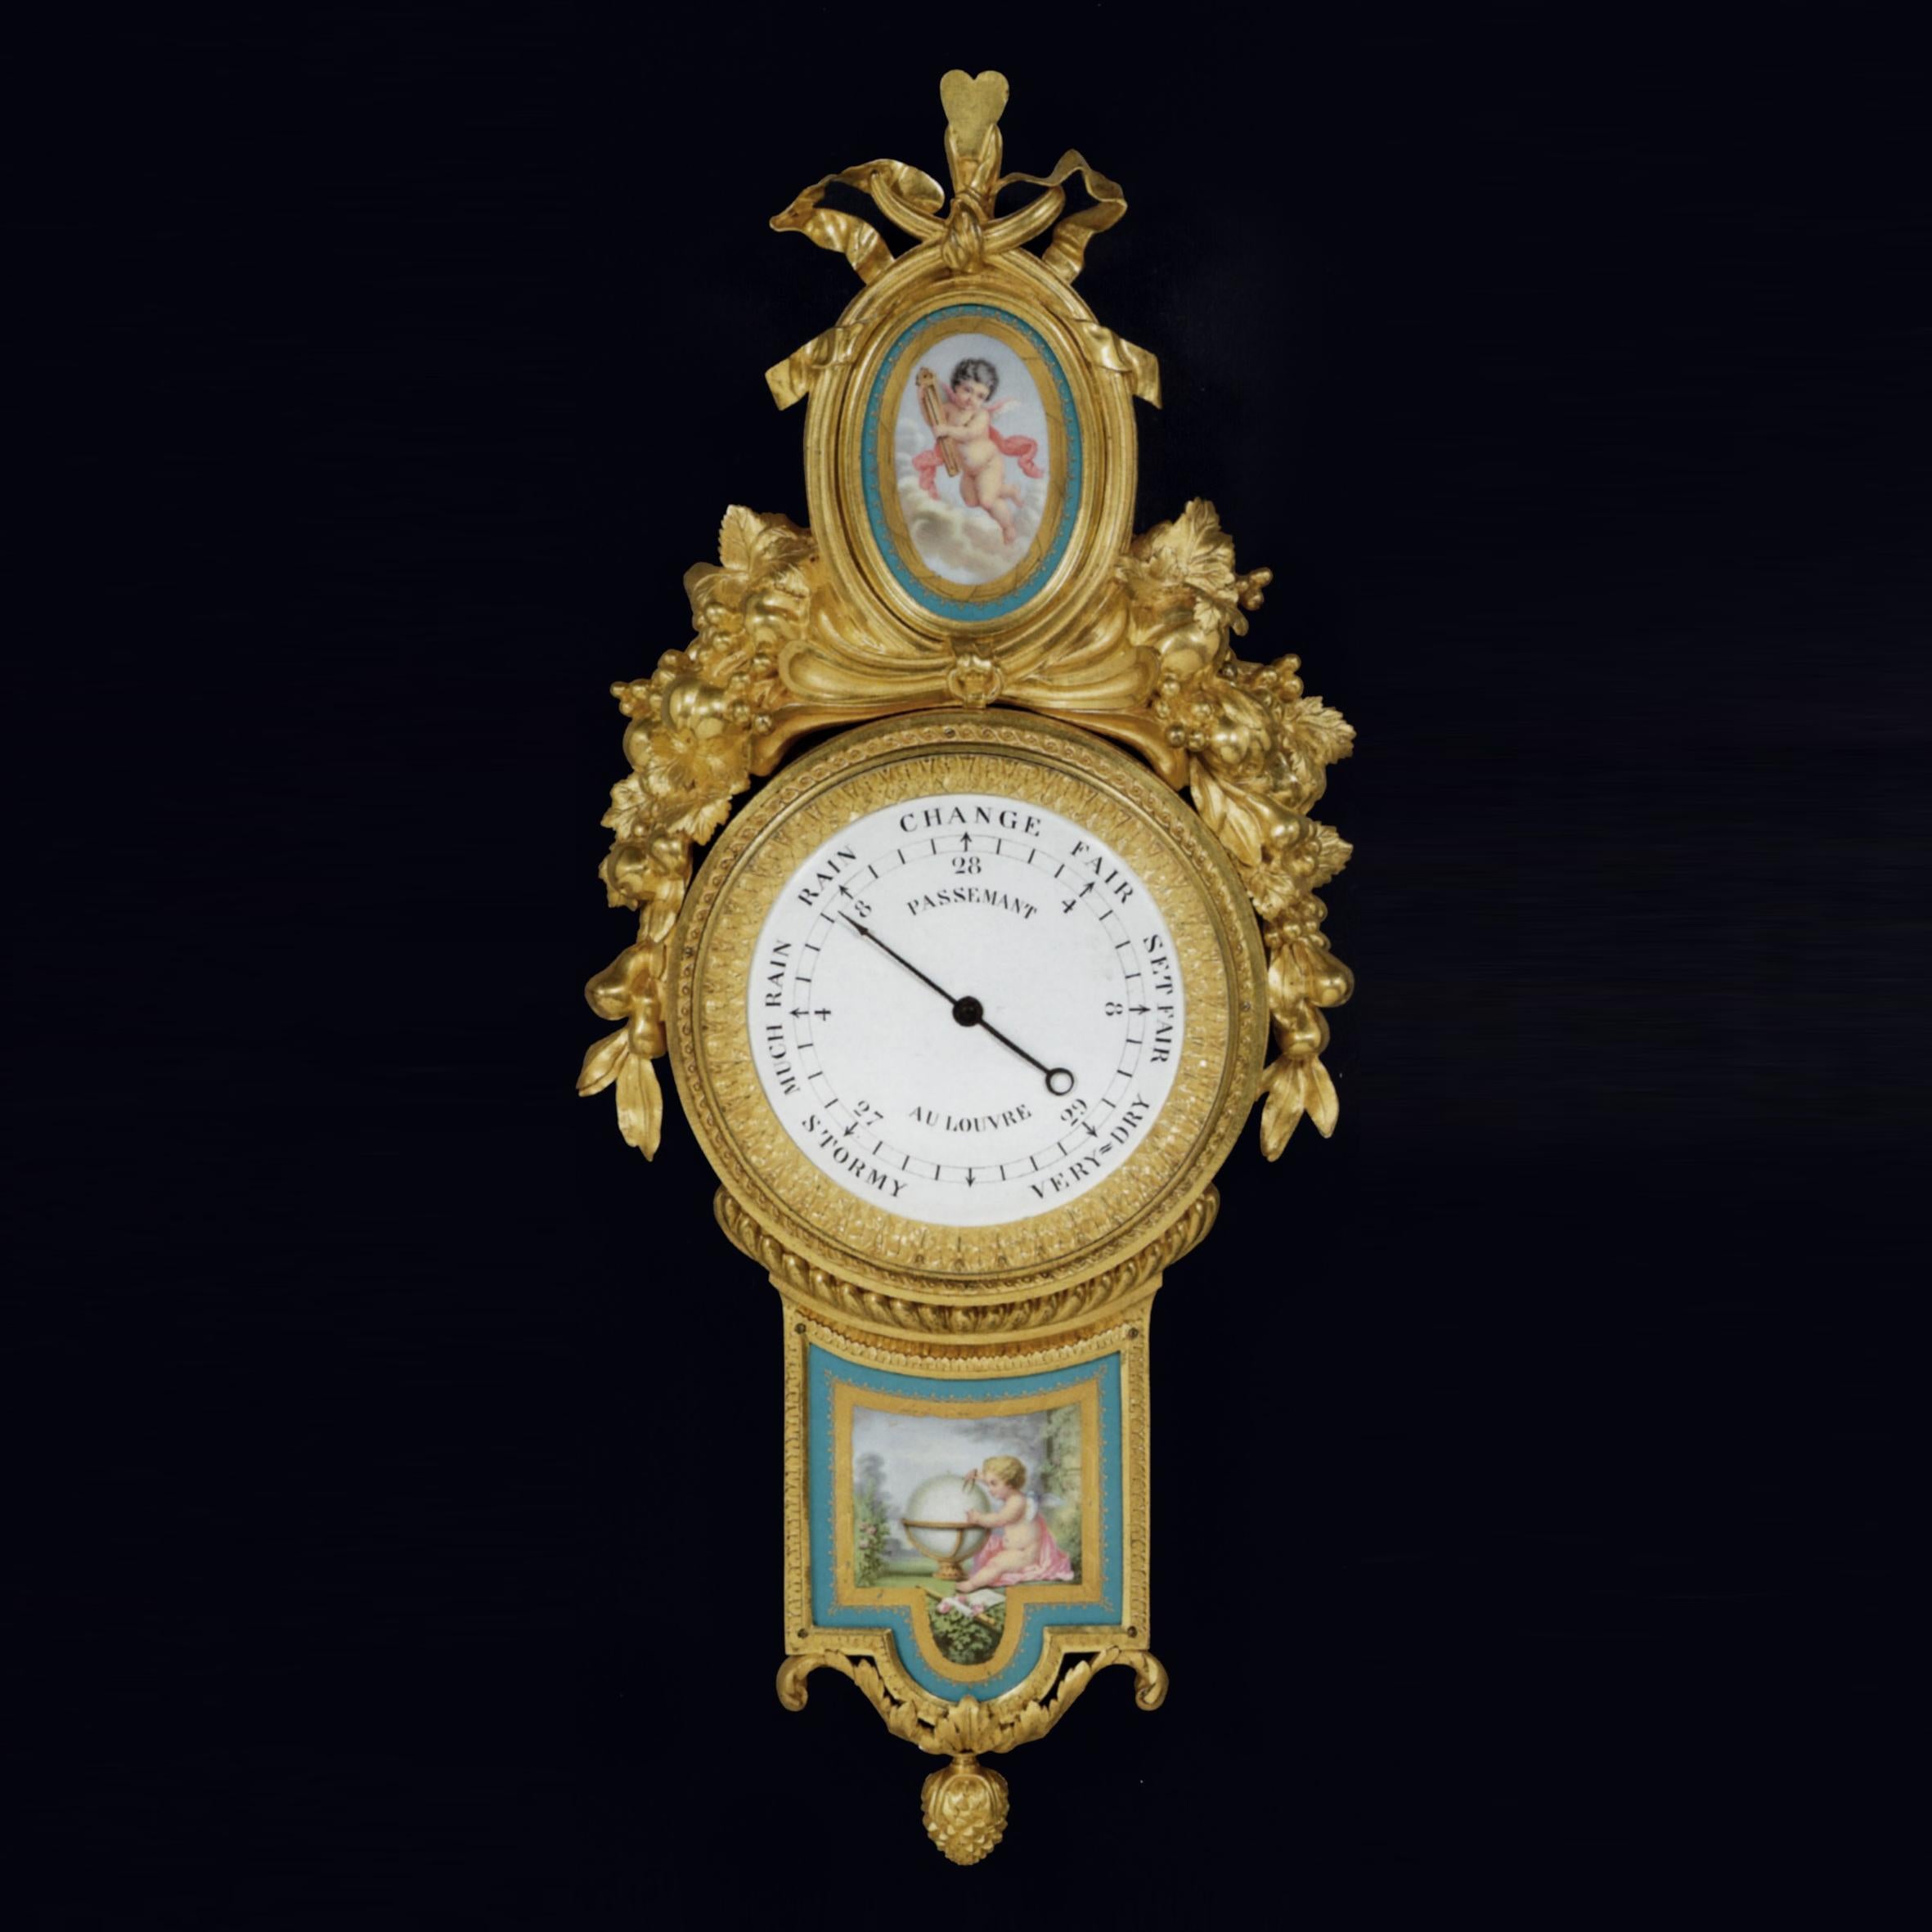 Une très belle pendule murale en bronze doré et un baromètre assorti avec des plaques de Sèvres.

Le cadran de la pendule est signé 'JULIEN LEROY A PARIS', le cadran du baromètre est signé 'PASSEMANT AU LOUVRE'.

L'horloge murale à sonnerie de